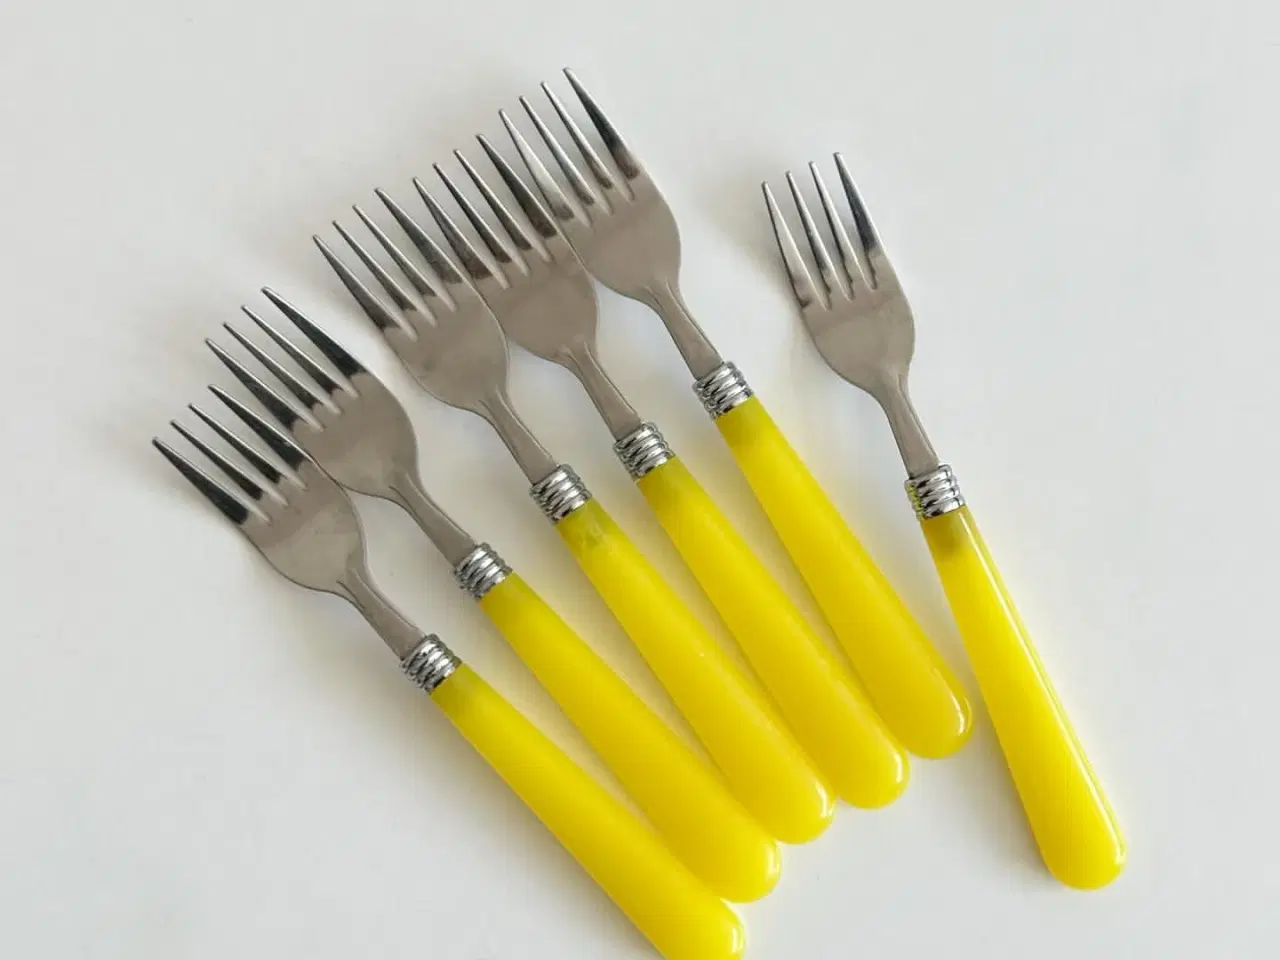 Billede 2 - Retro gafler, stål og gul plast, 6 stk samlet